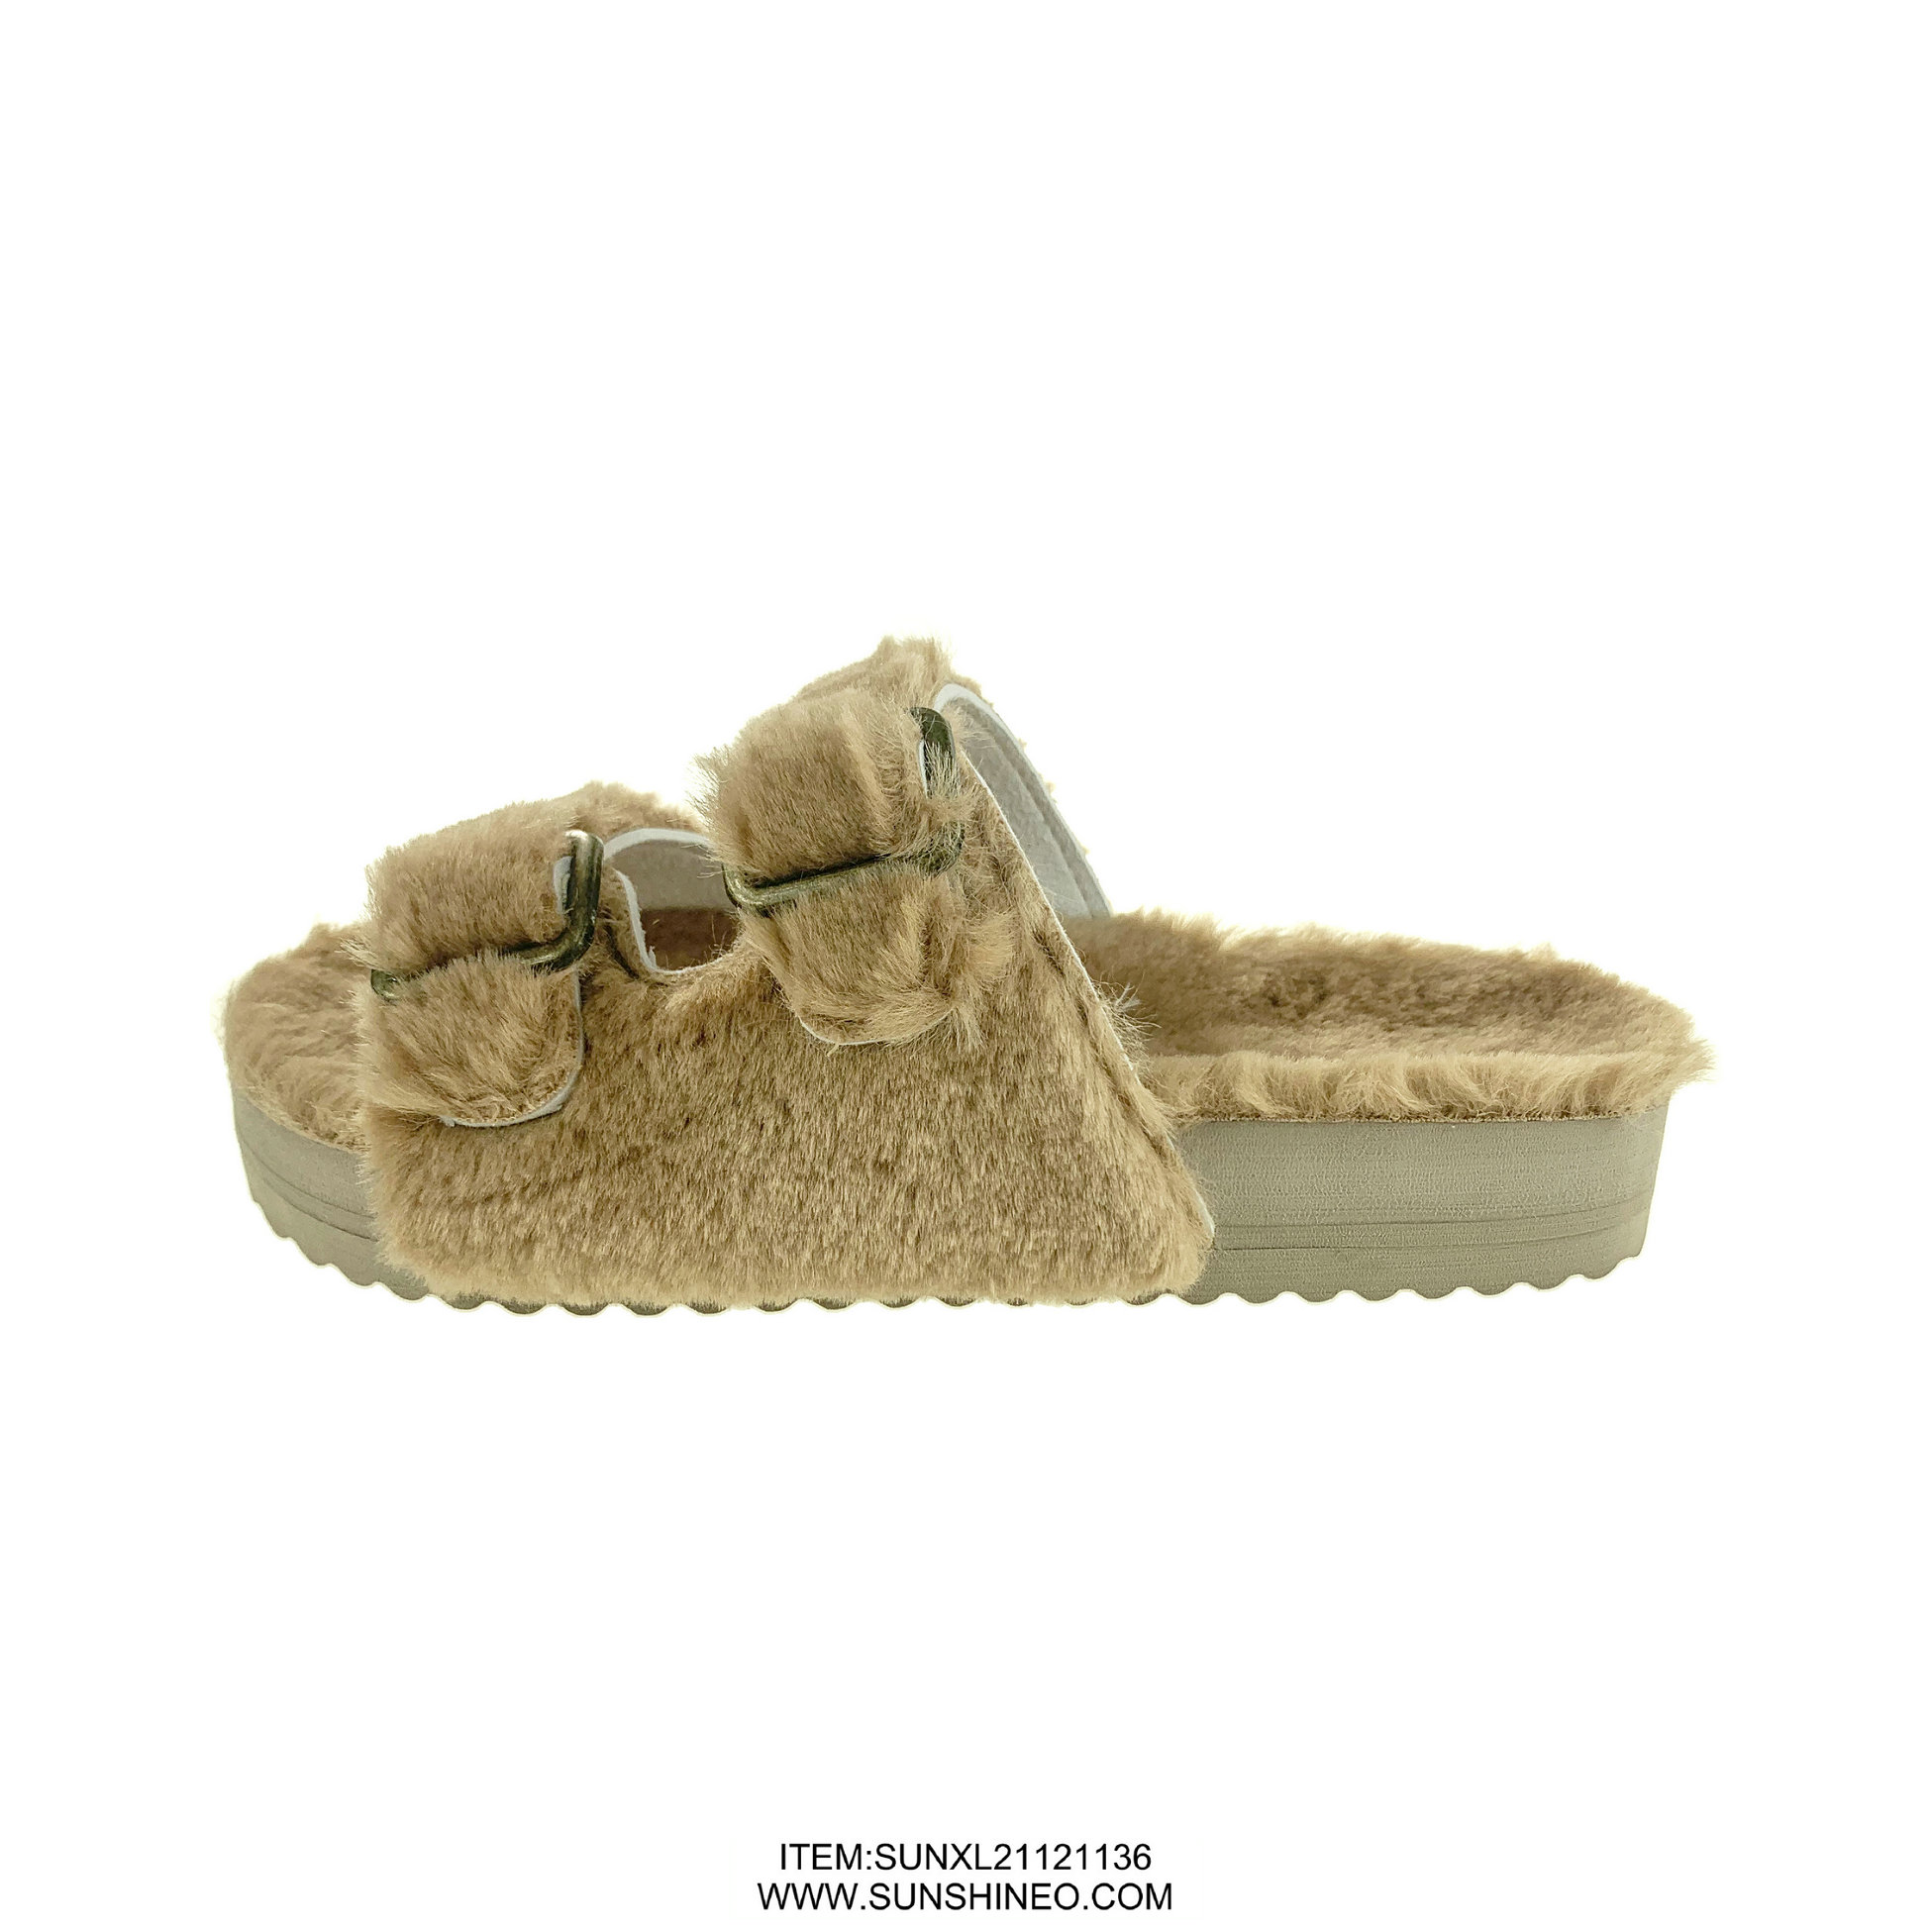 SUNXL21121136 fur flip flop sandals winter slippers